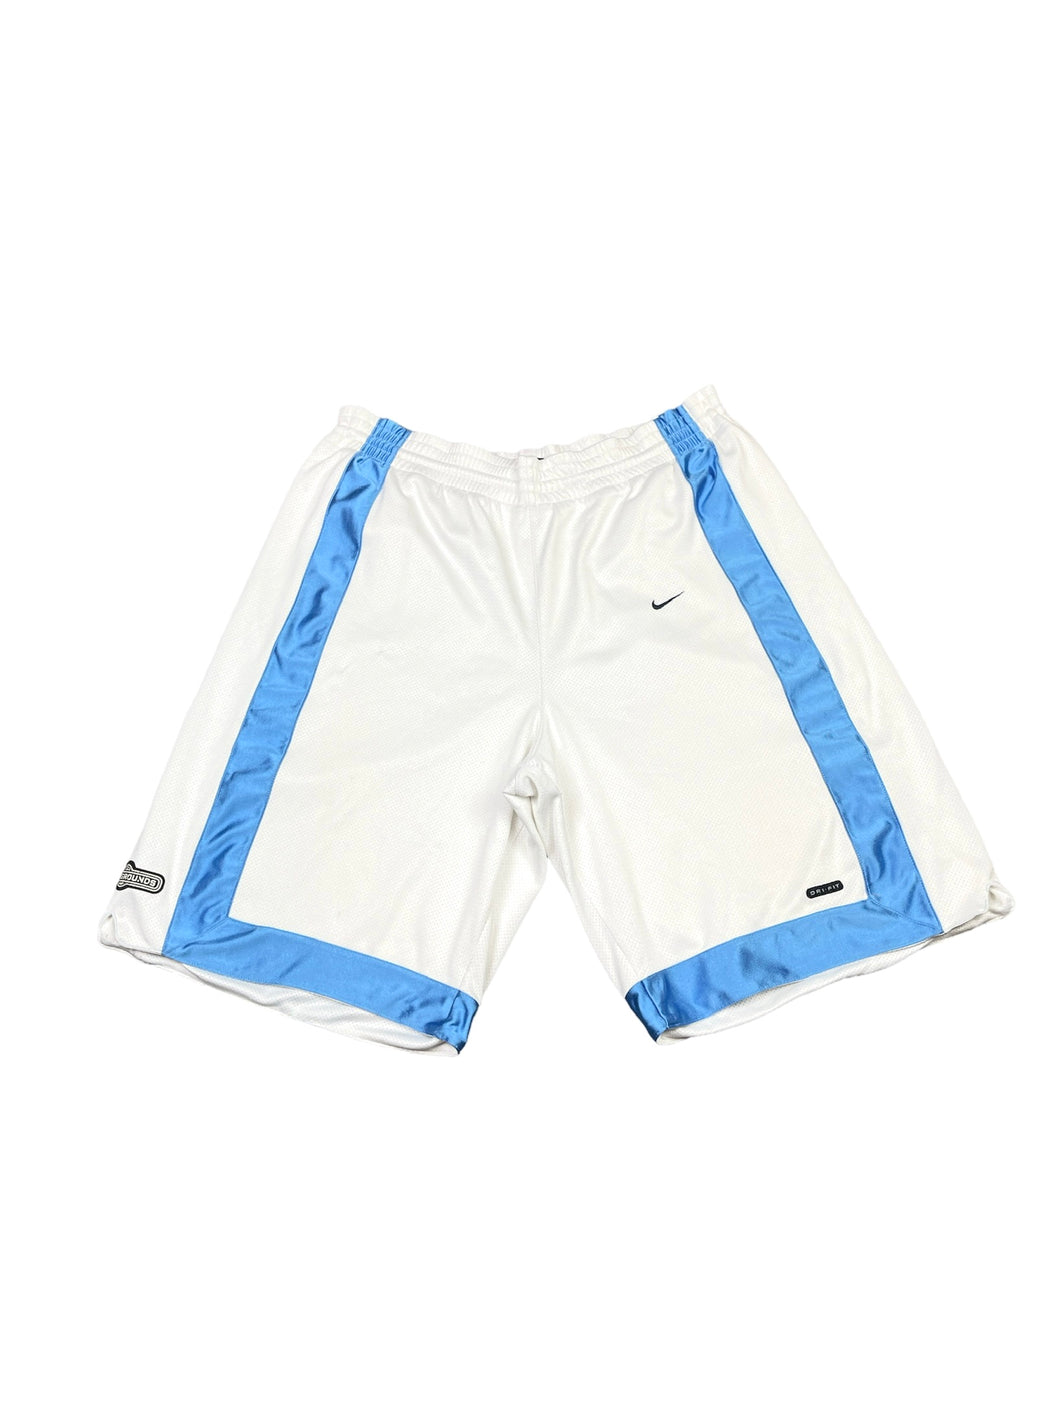 Nike Short - XLarge